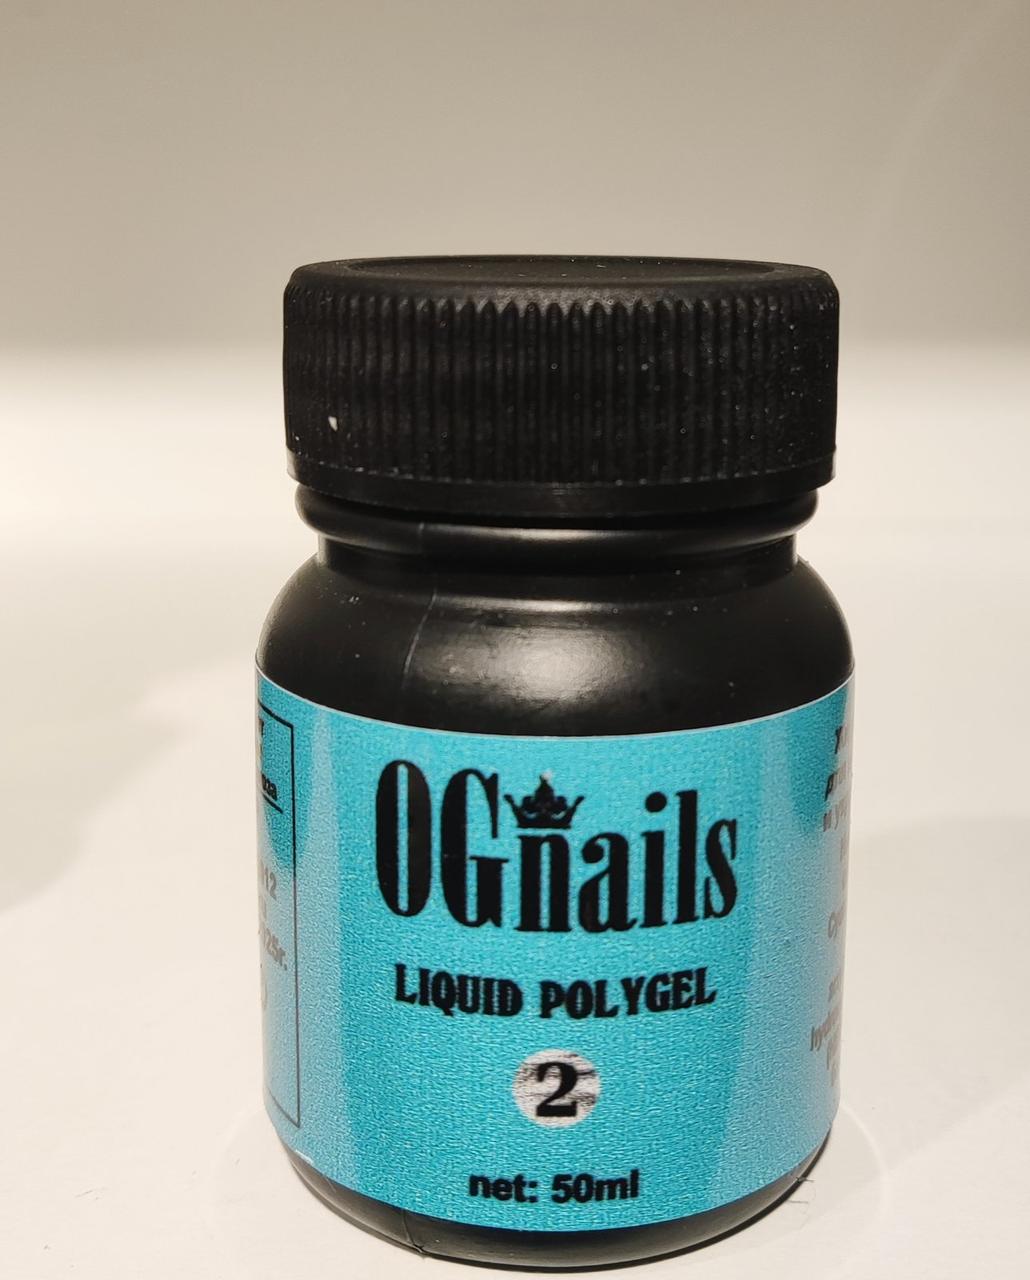 Жидкий полигель (Liquid polygel) №2 OGnails молочный, 50 мл (флакон без кисти)